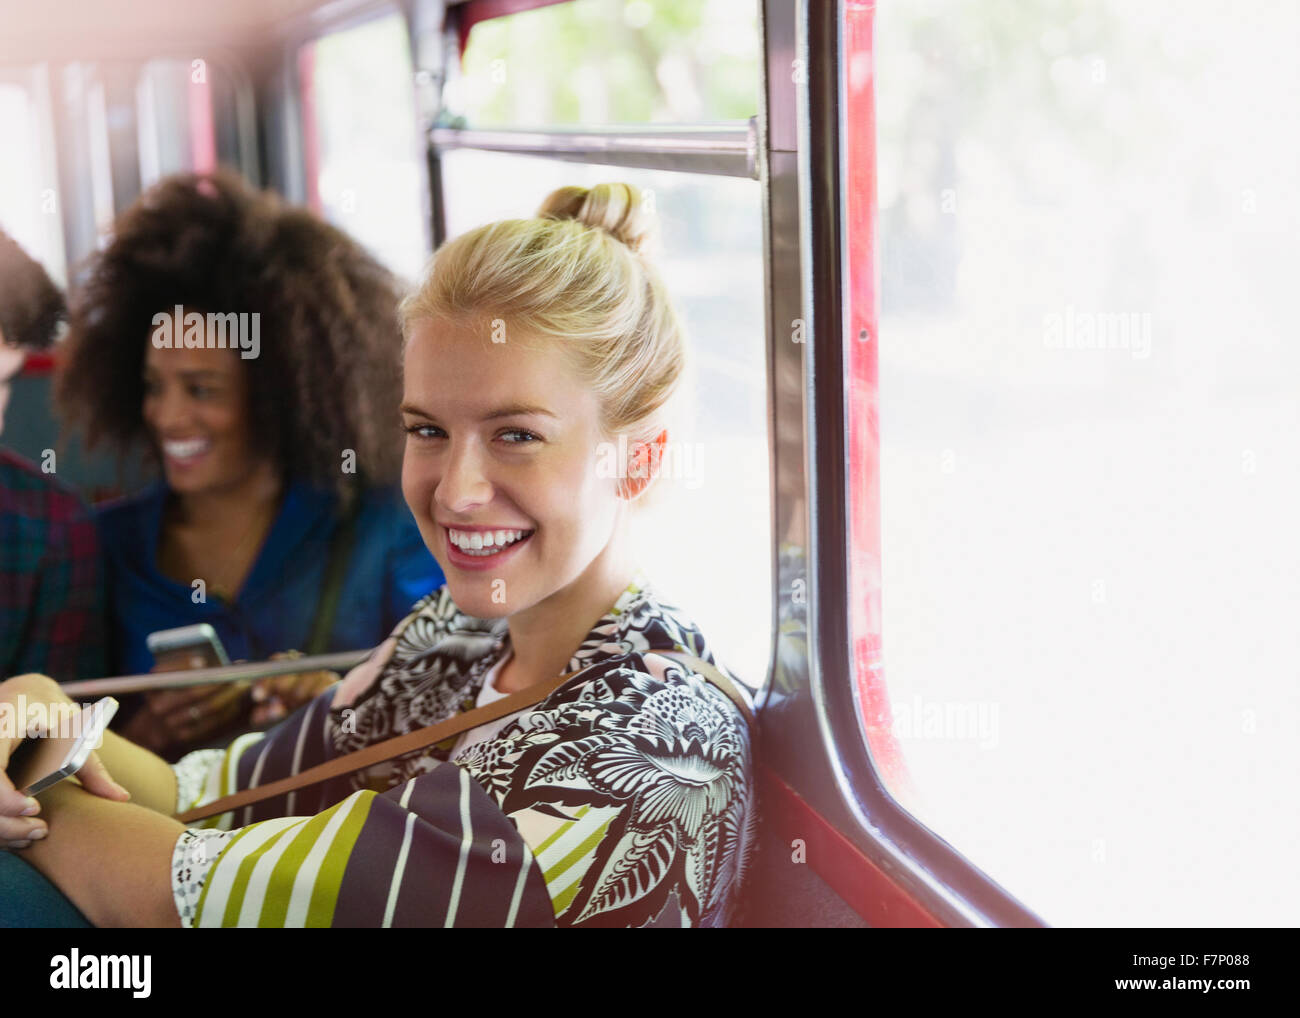 Portrait smiling blonde woman riding bus Stock Photo